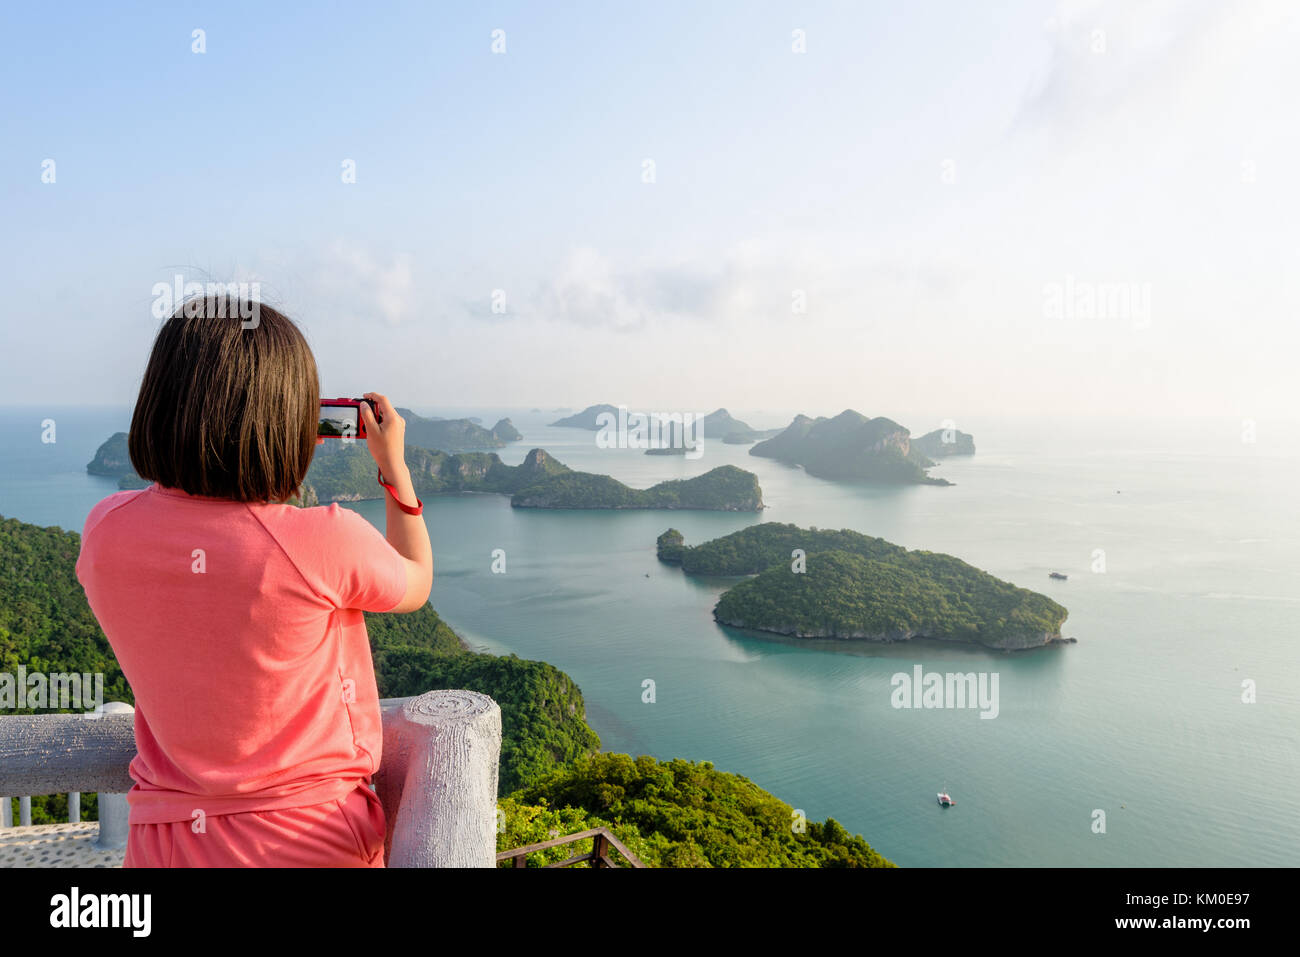 Touriste sur le pic de point de vue de ko Wua Ta Lap island utiliser appareil photo prend des photos à une nature magnifique paysage pendant le lever du soleil sur la mer à mu ko ang Banque D'Images